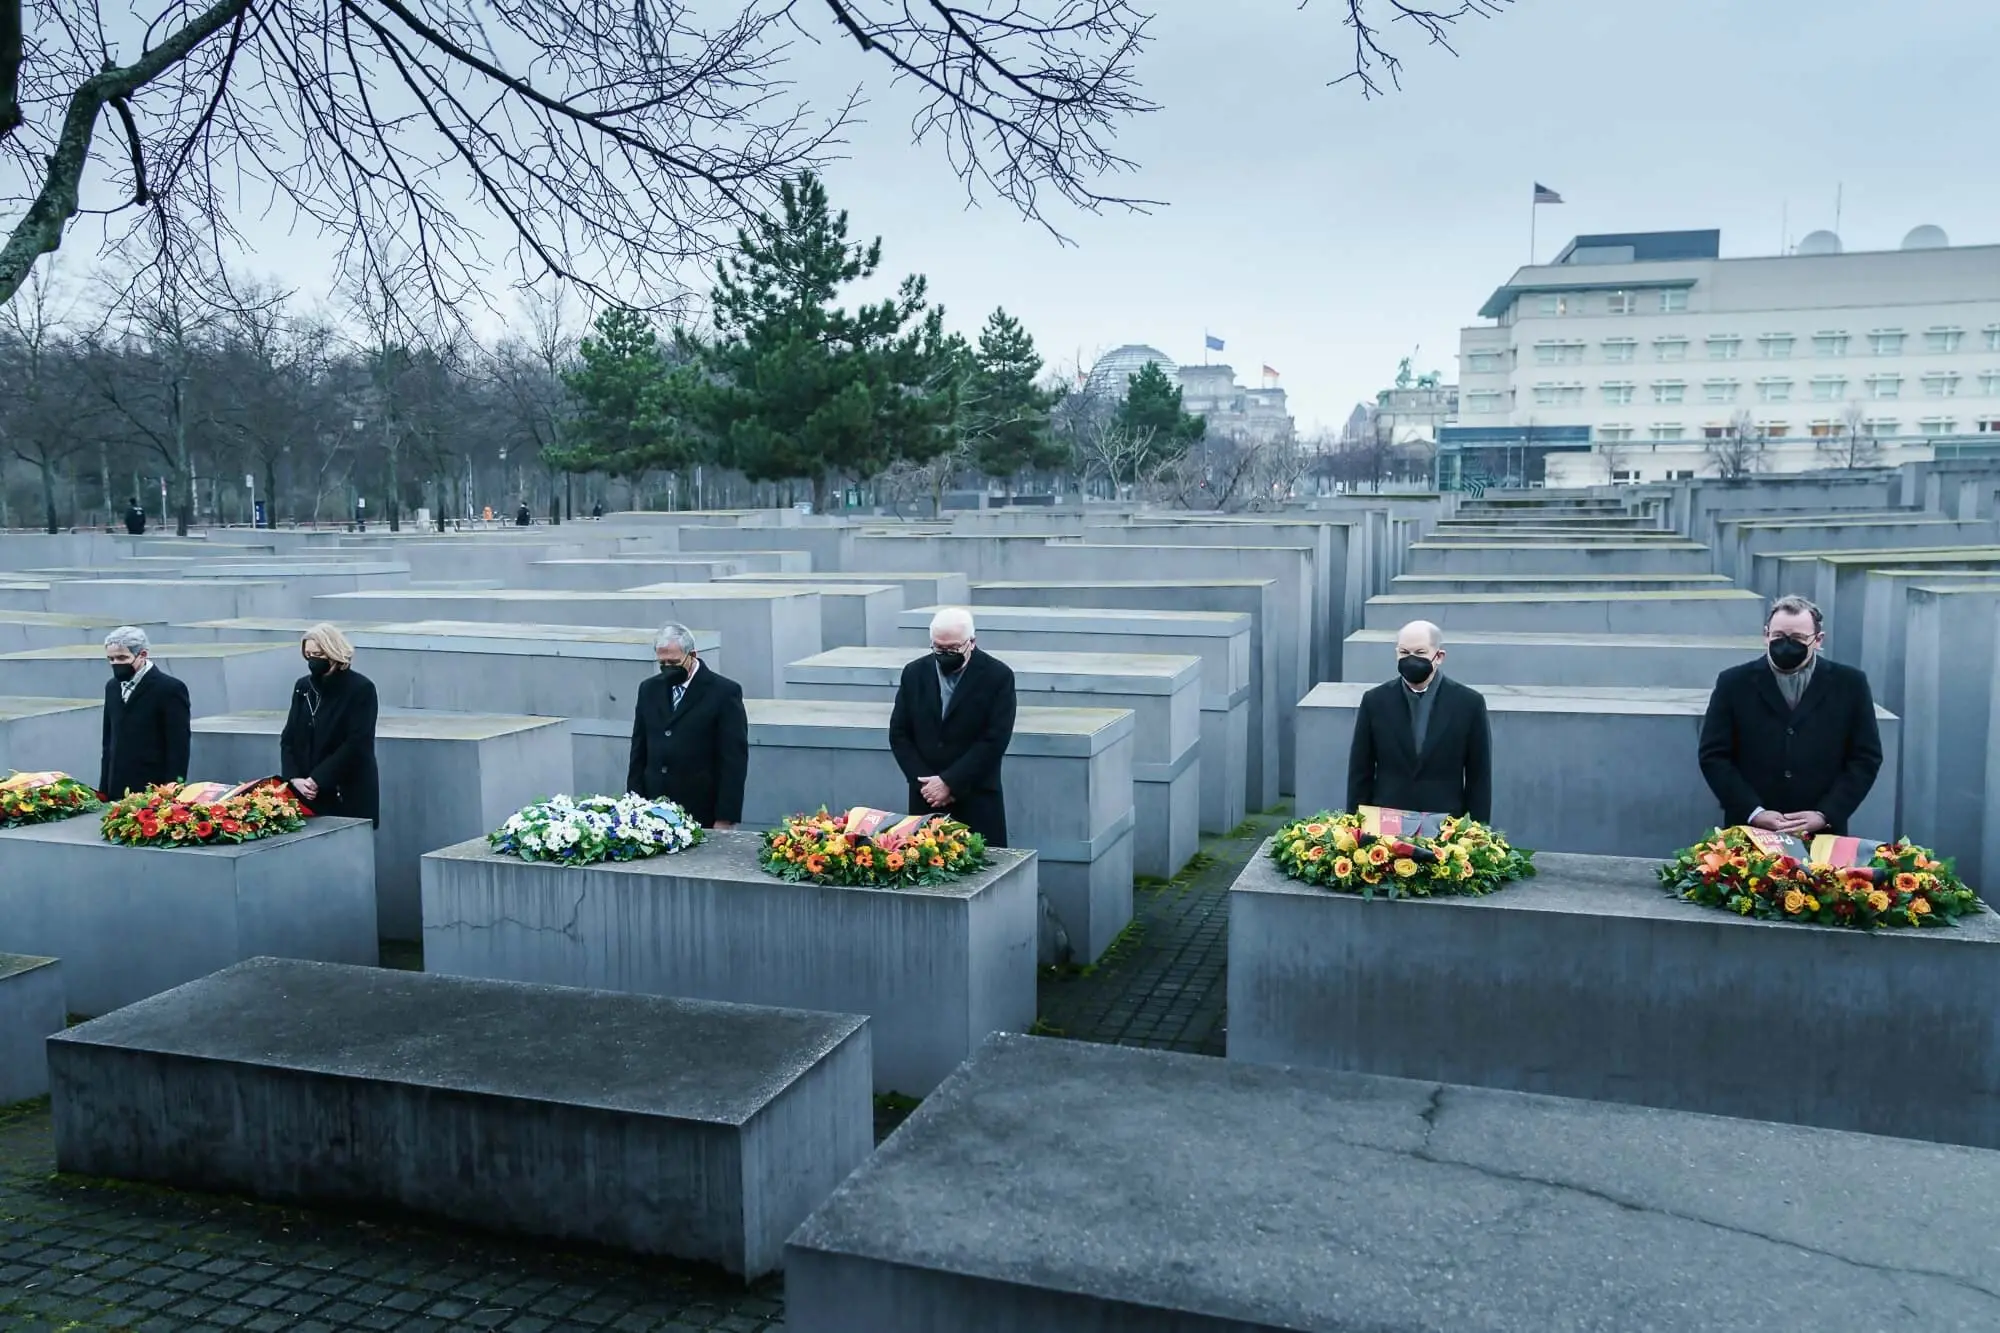 Kranzniederlegung am Denkmal für die ermordeten Juden Europas